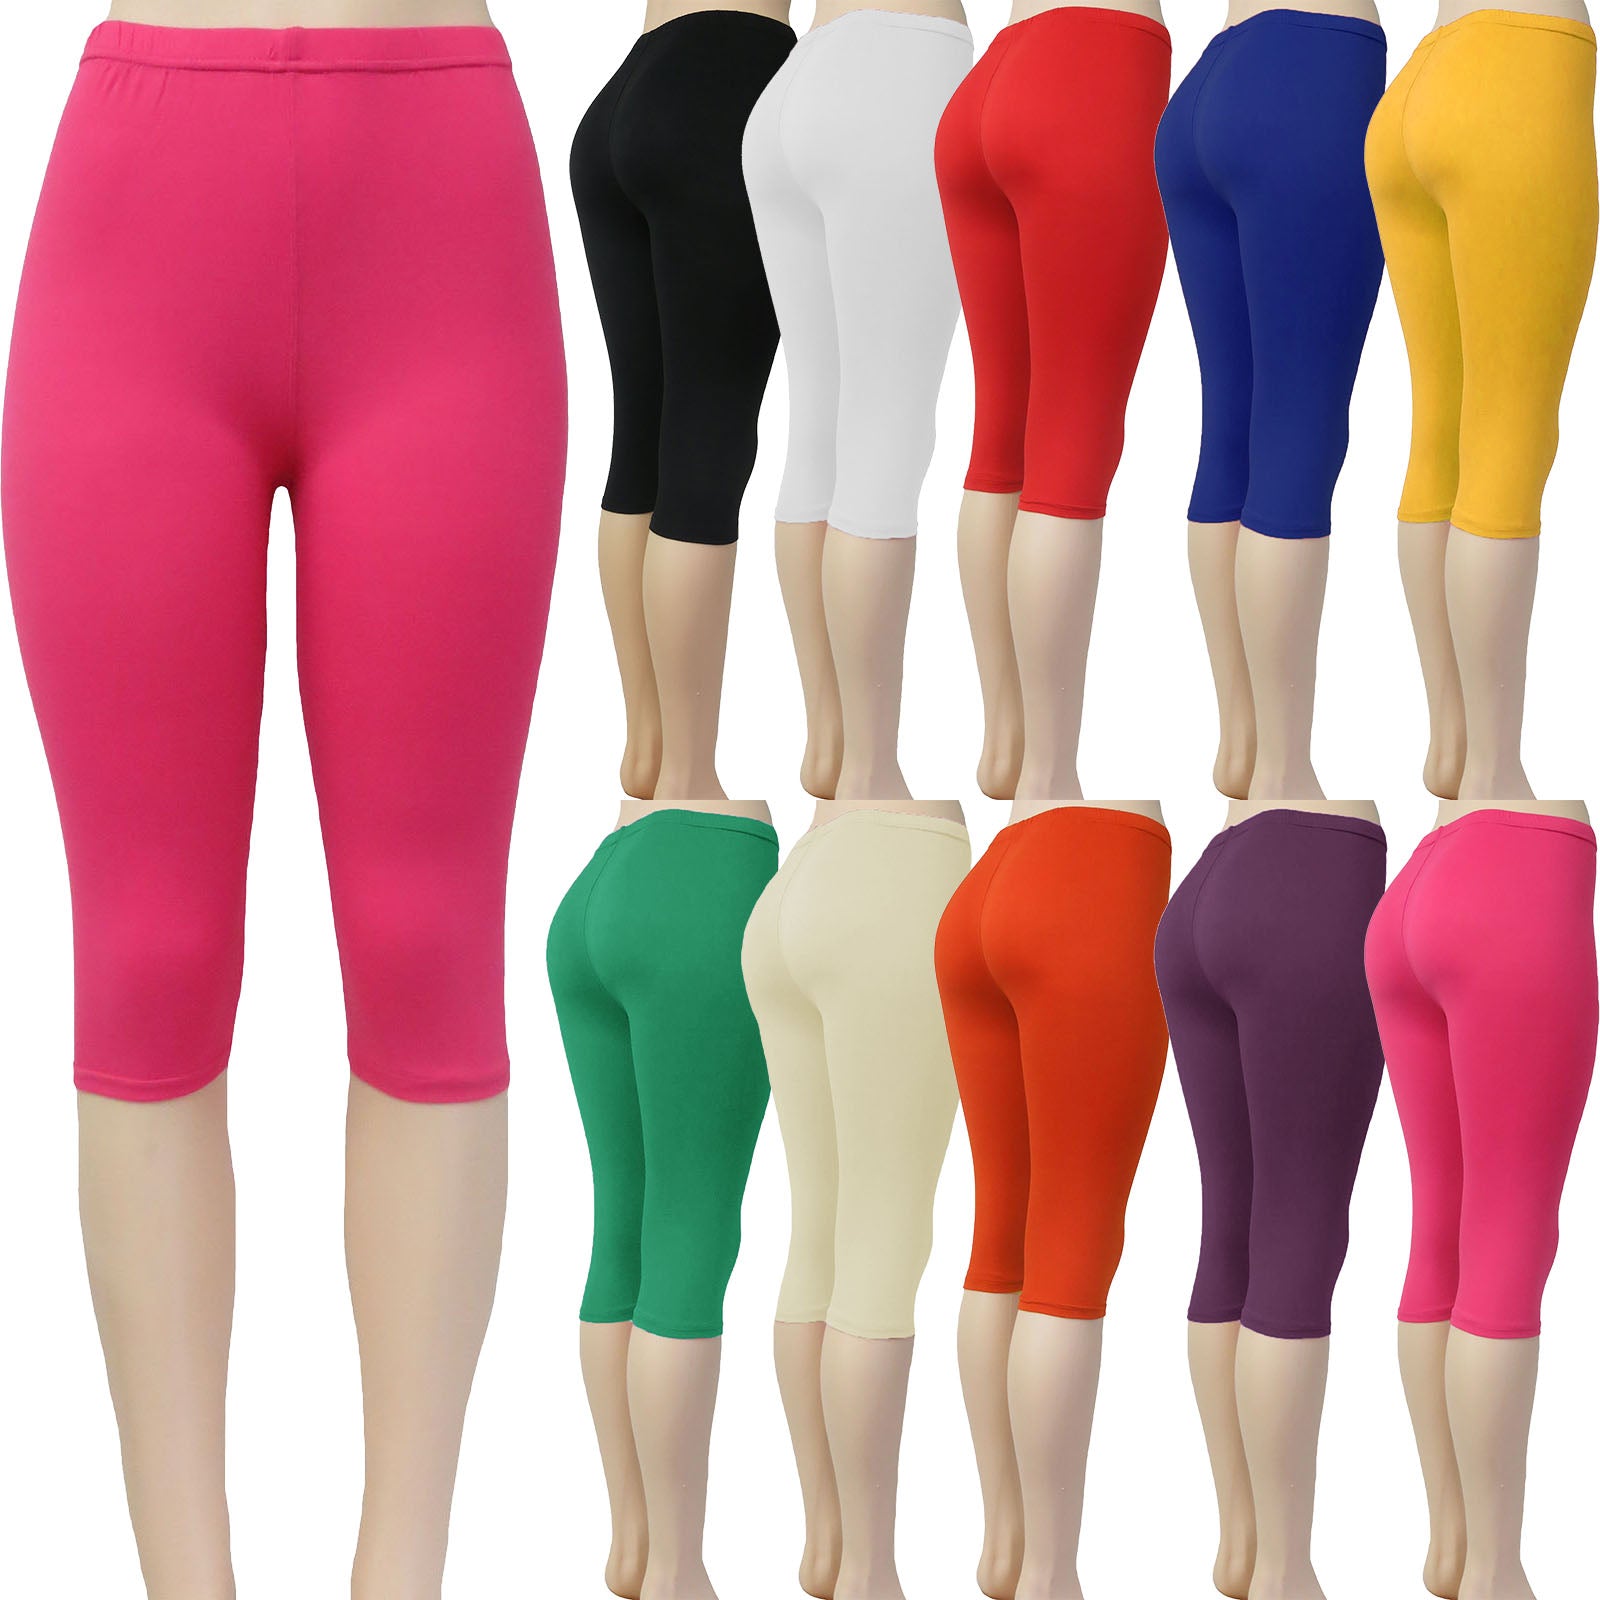 Cute colors pattern womens leggings | Cute leggings, Women, Women's leggings